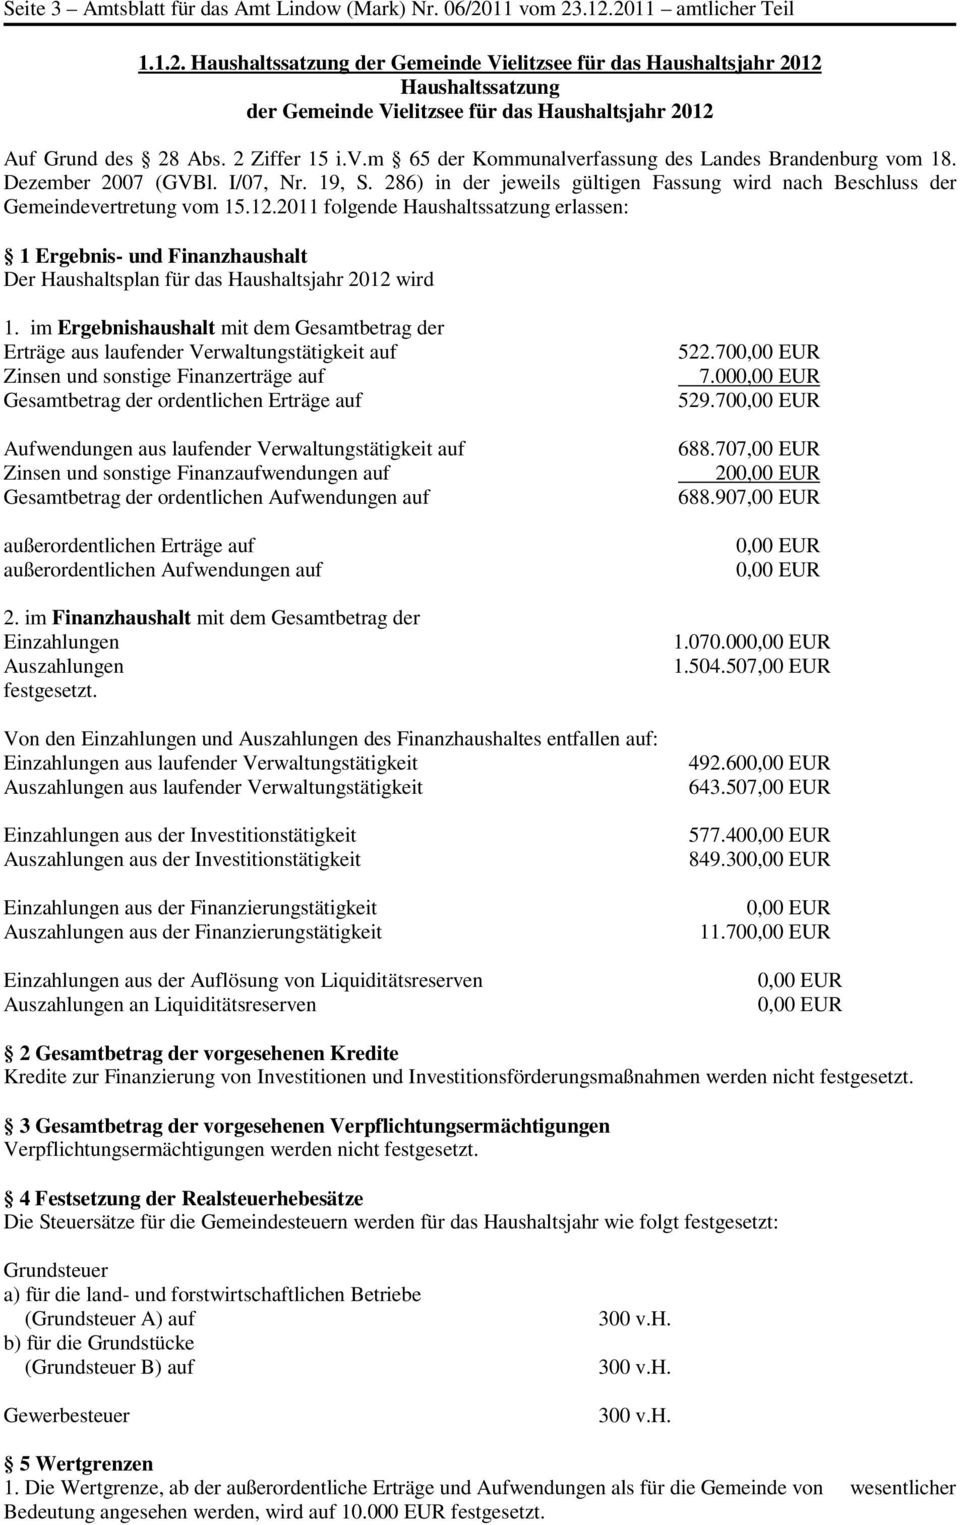 2 Ziffer 15 i.v.m 65 der Kommunalverfassung des Landes Brandenburg vom 18. Dezember 2007 (GVBl. I/07, Nr. 19, S. 286) in der jeweils gültigen Fassung wird nach Beschluss der Gemeindevertretung vom 15.